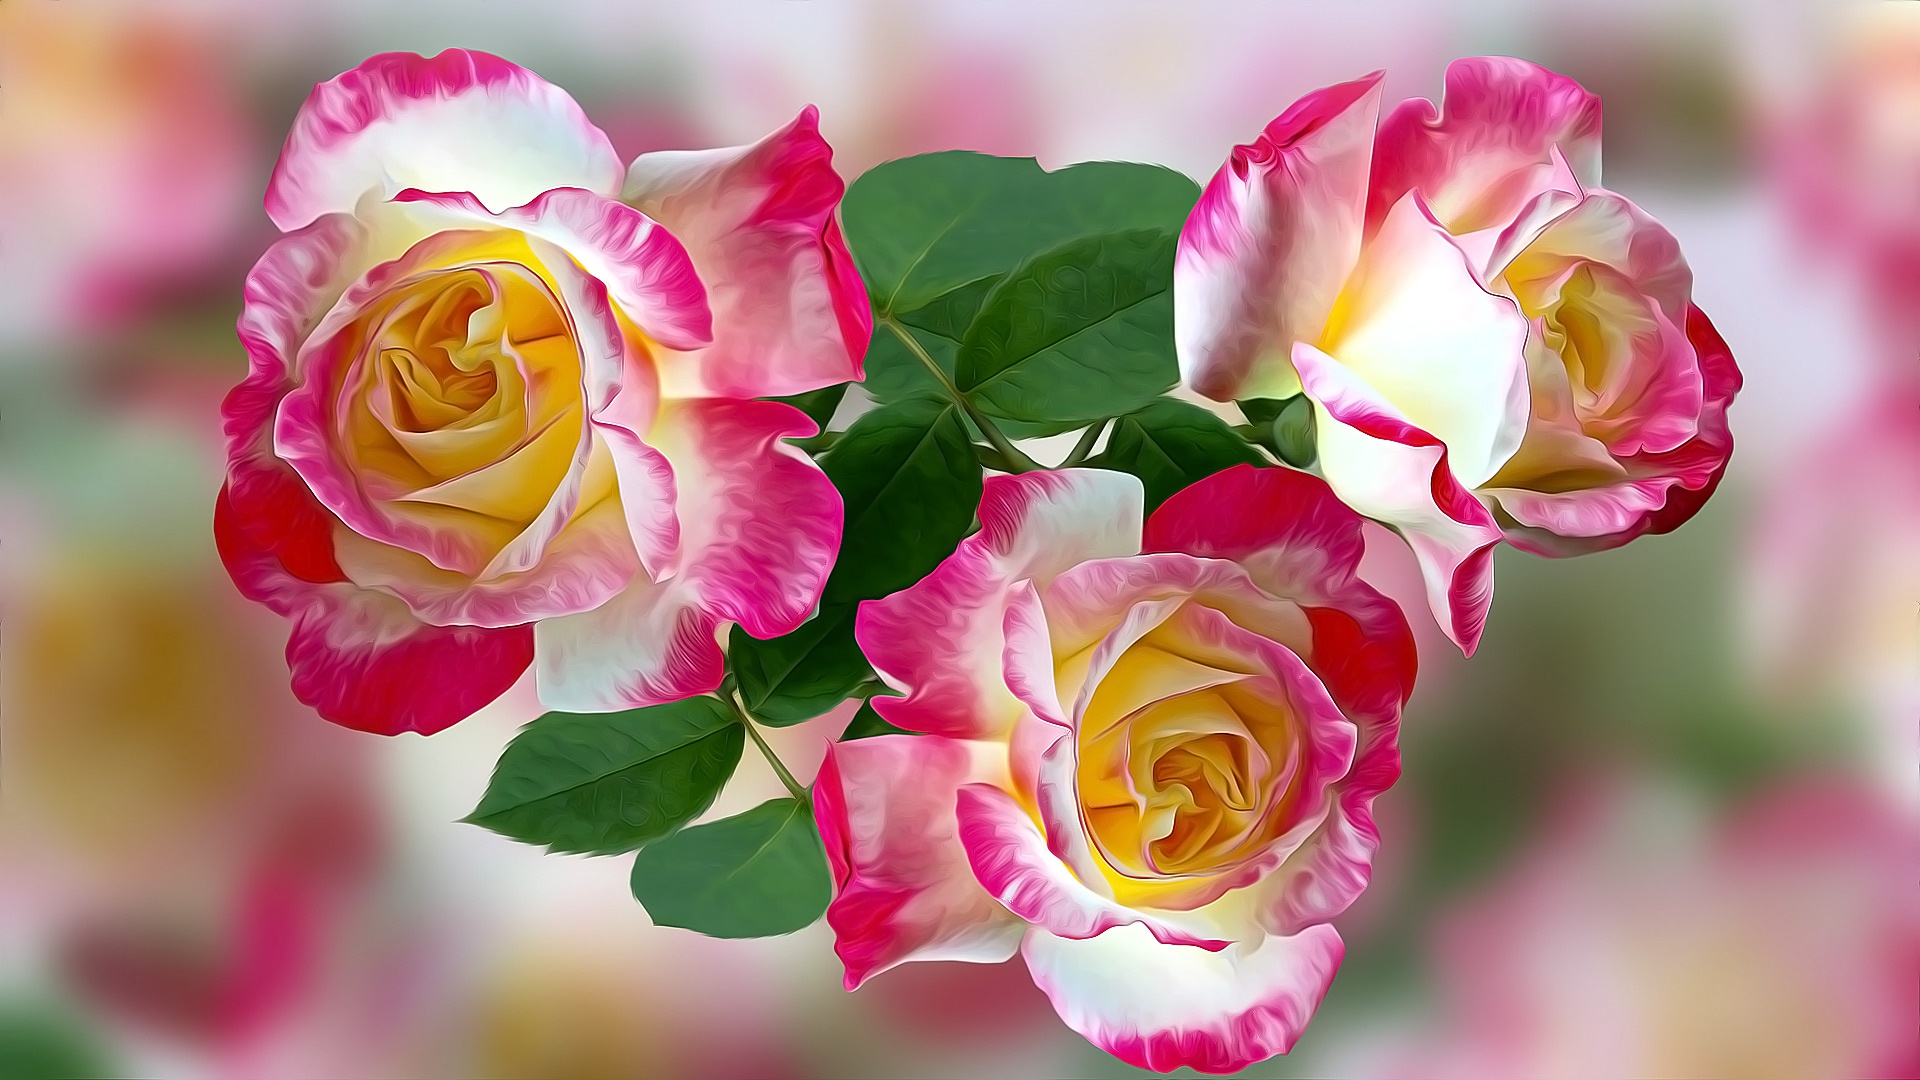 Обои розы желтые с розовым